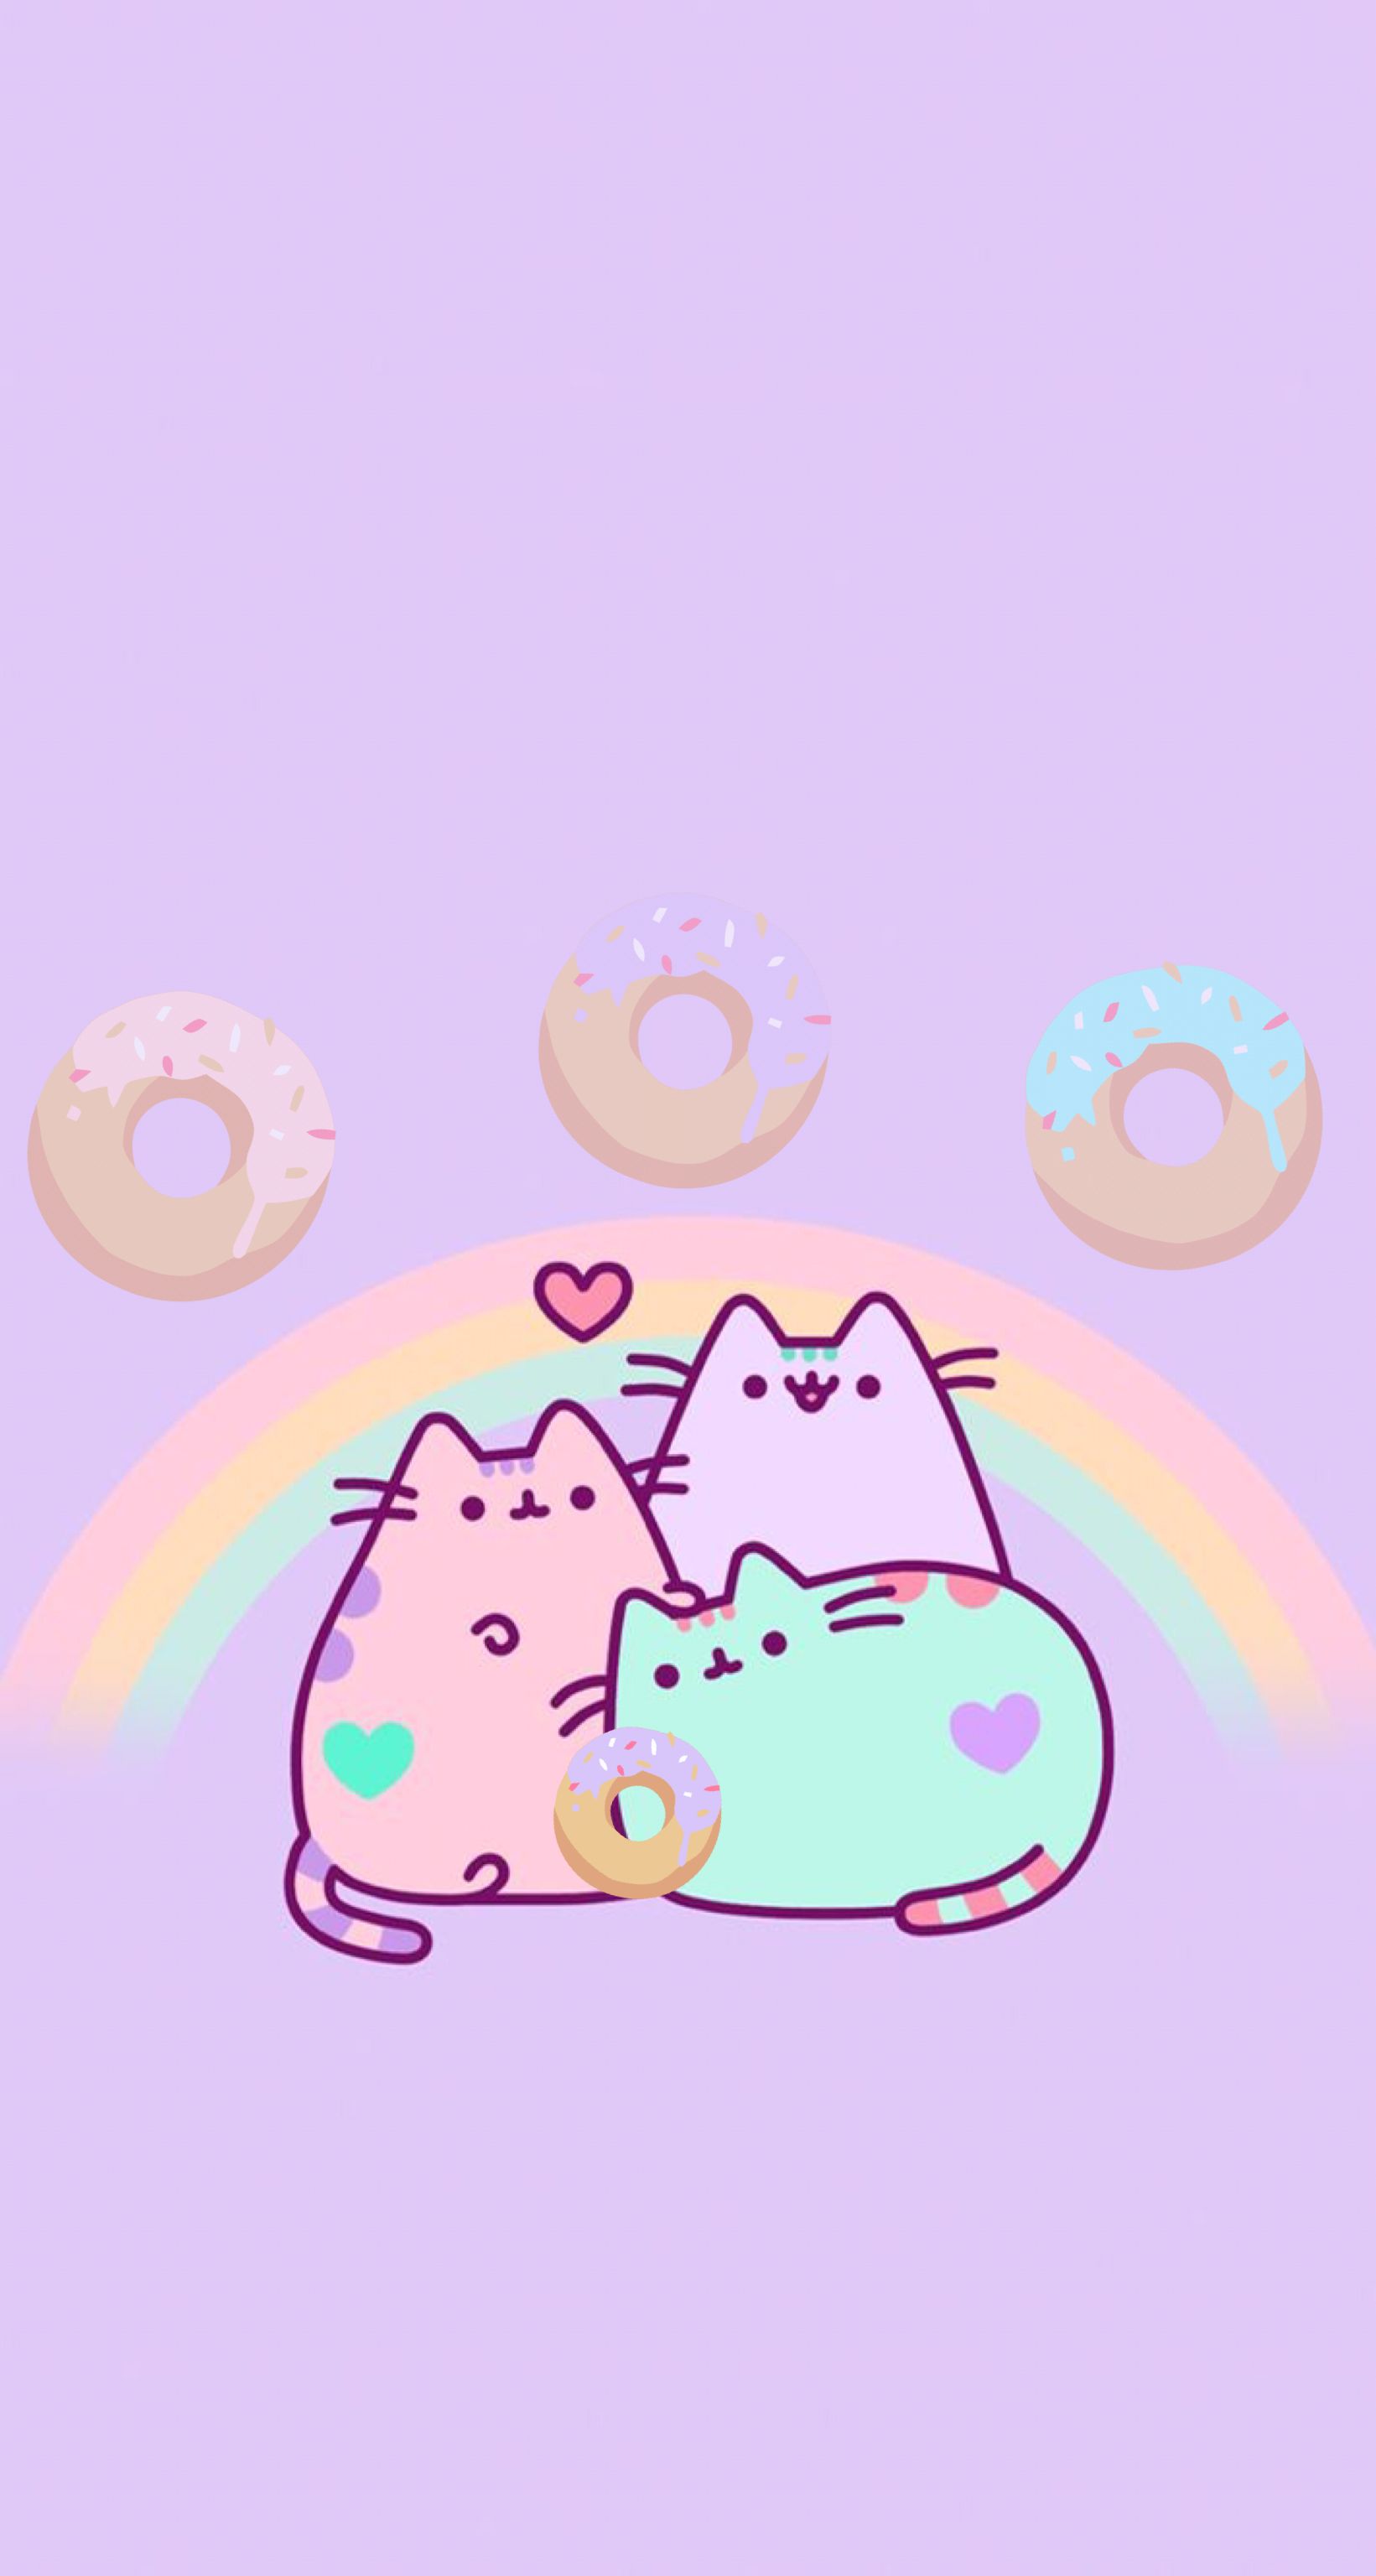 Pusheen Rainbow. Pusheen cute, Pusheen cat, Pusheen love